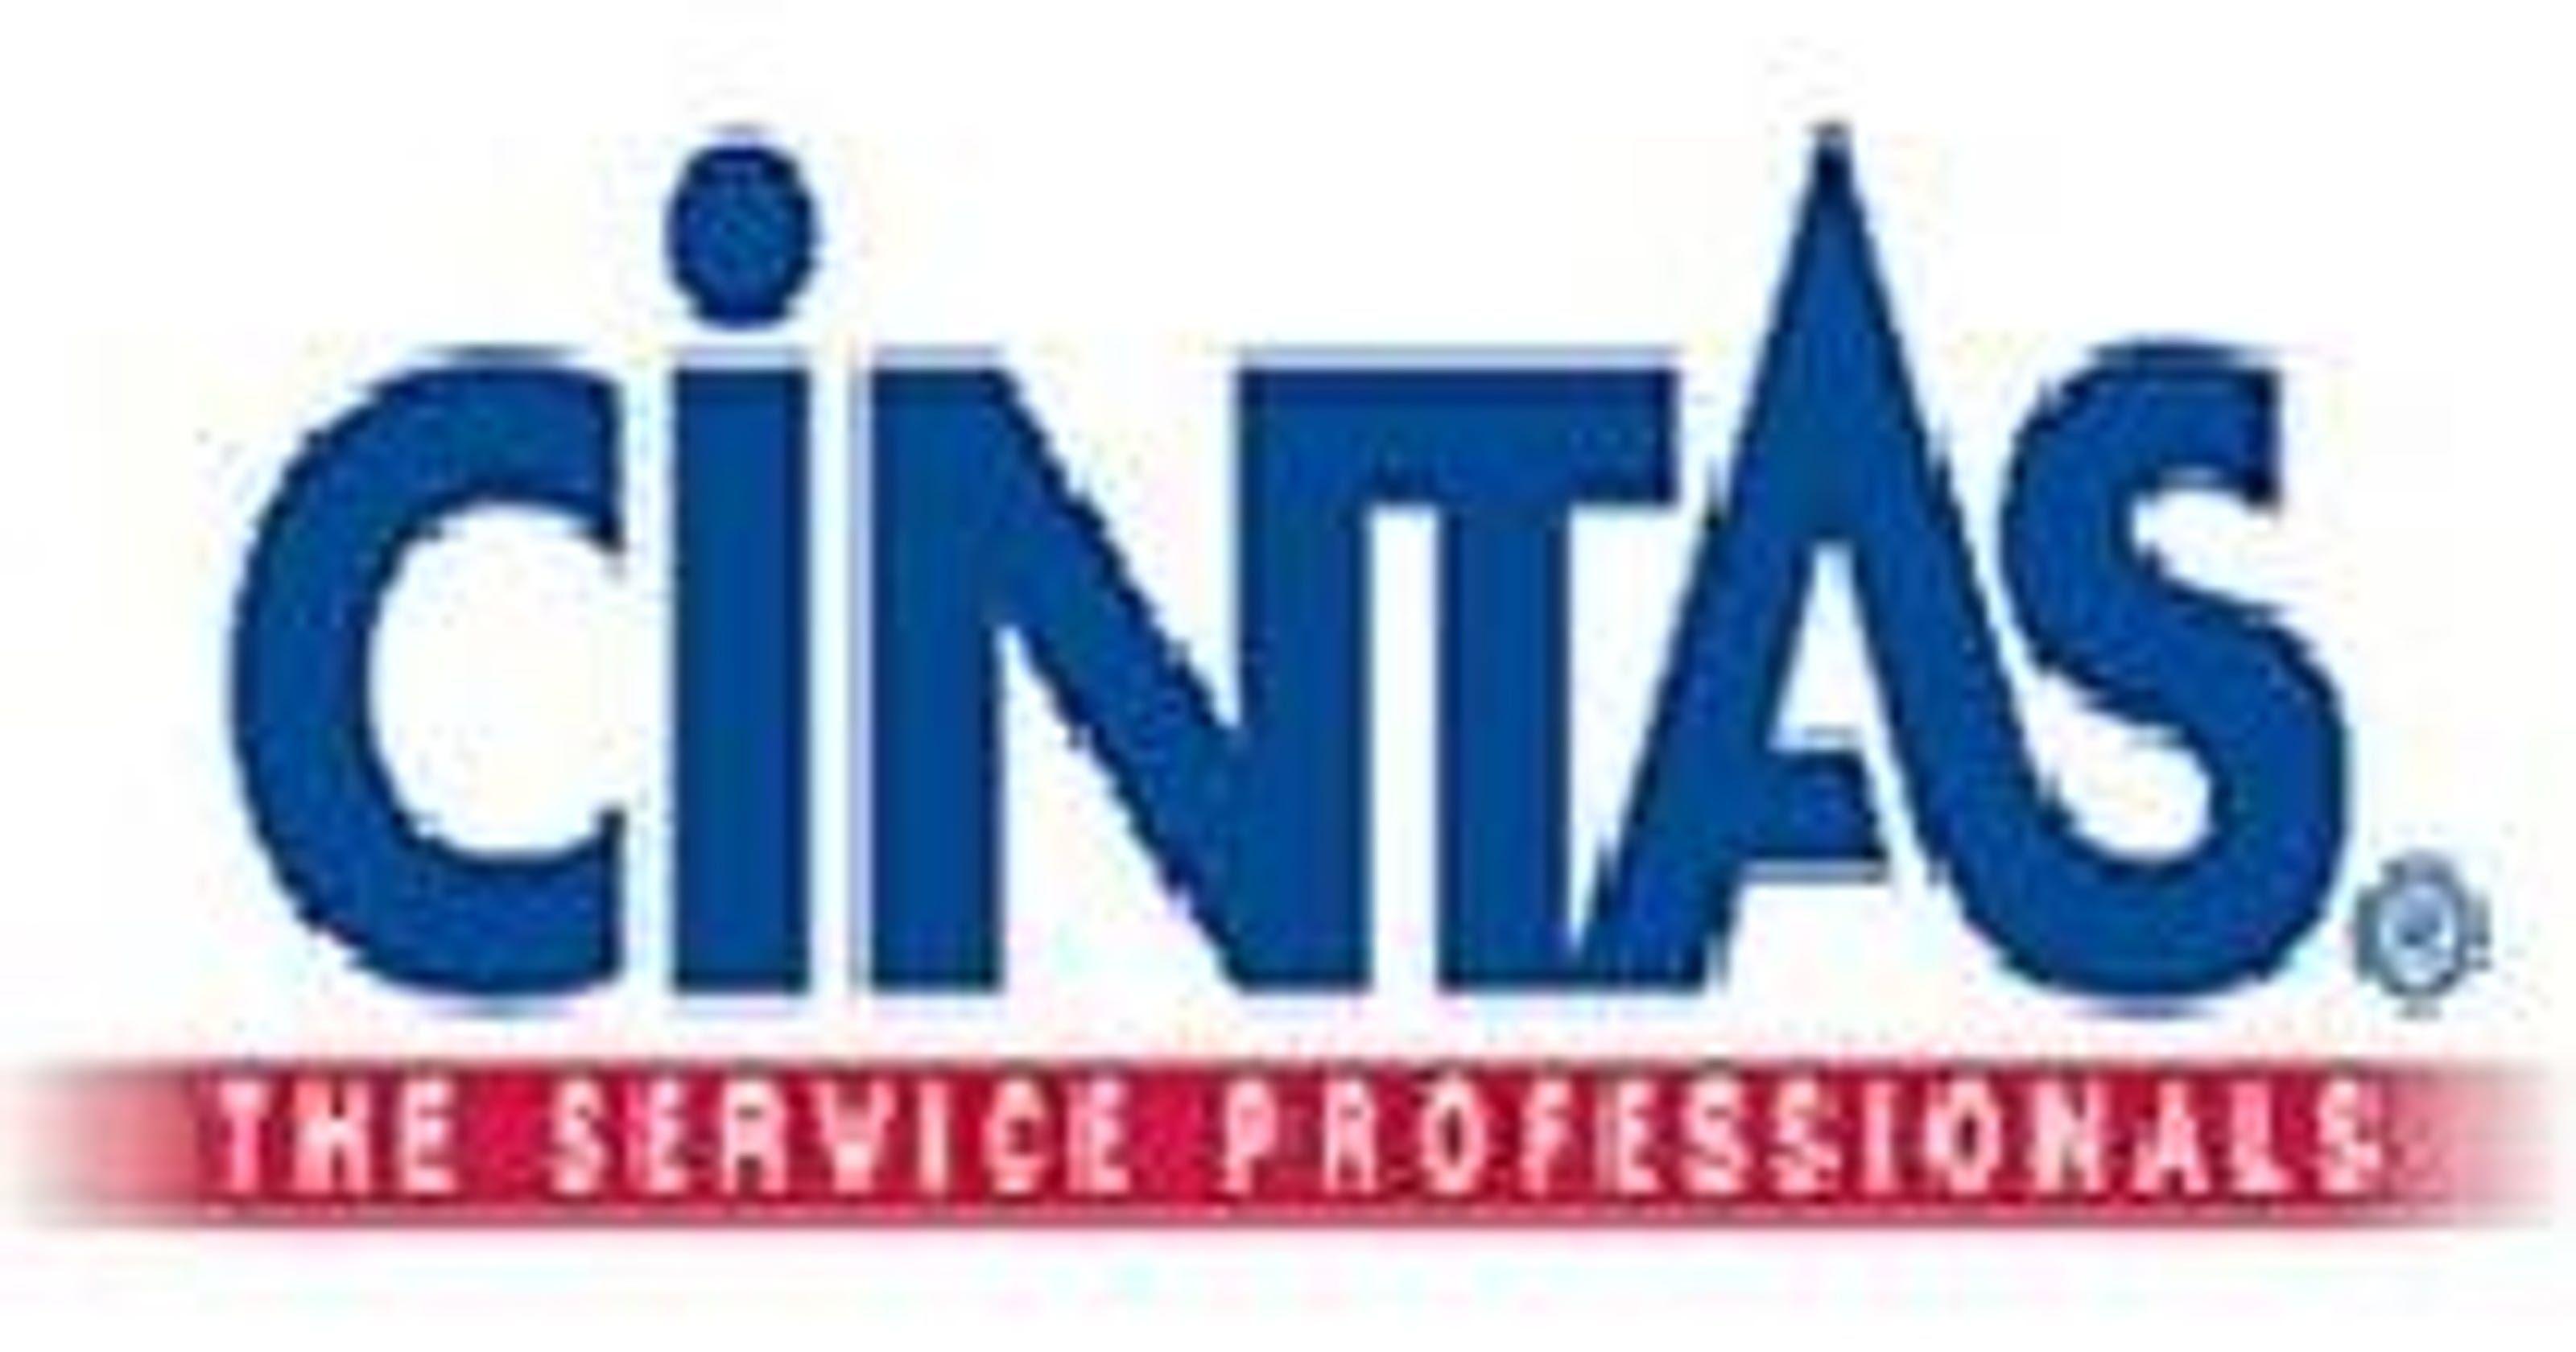 Cintas Logo - Cintas exits shredding business for $550M or more